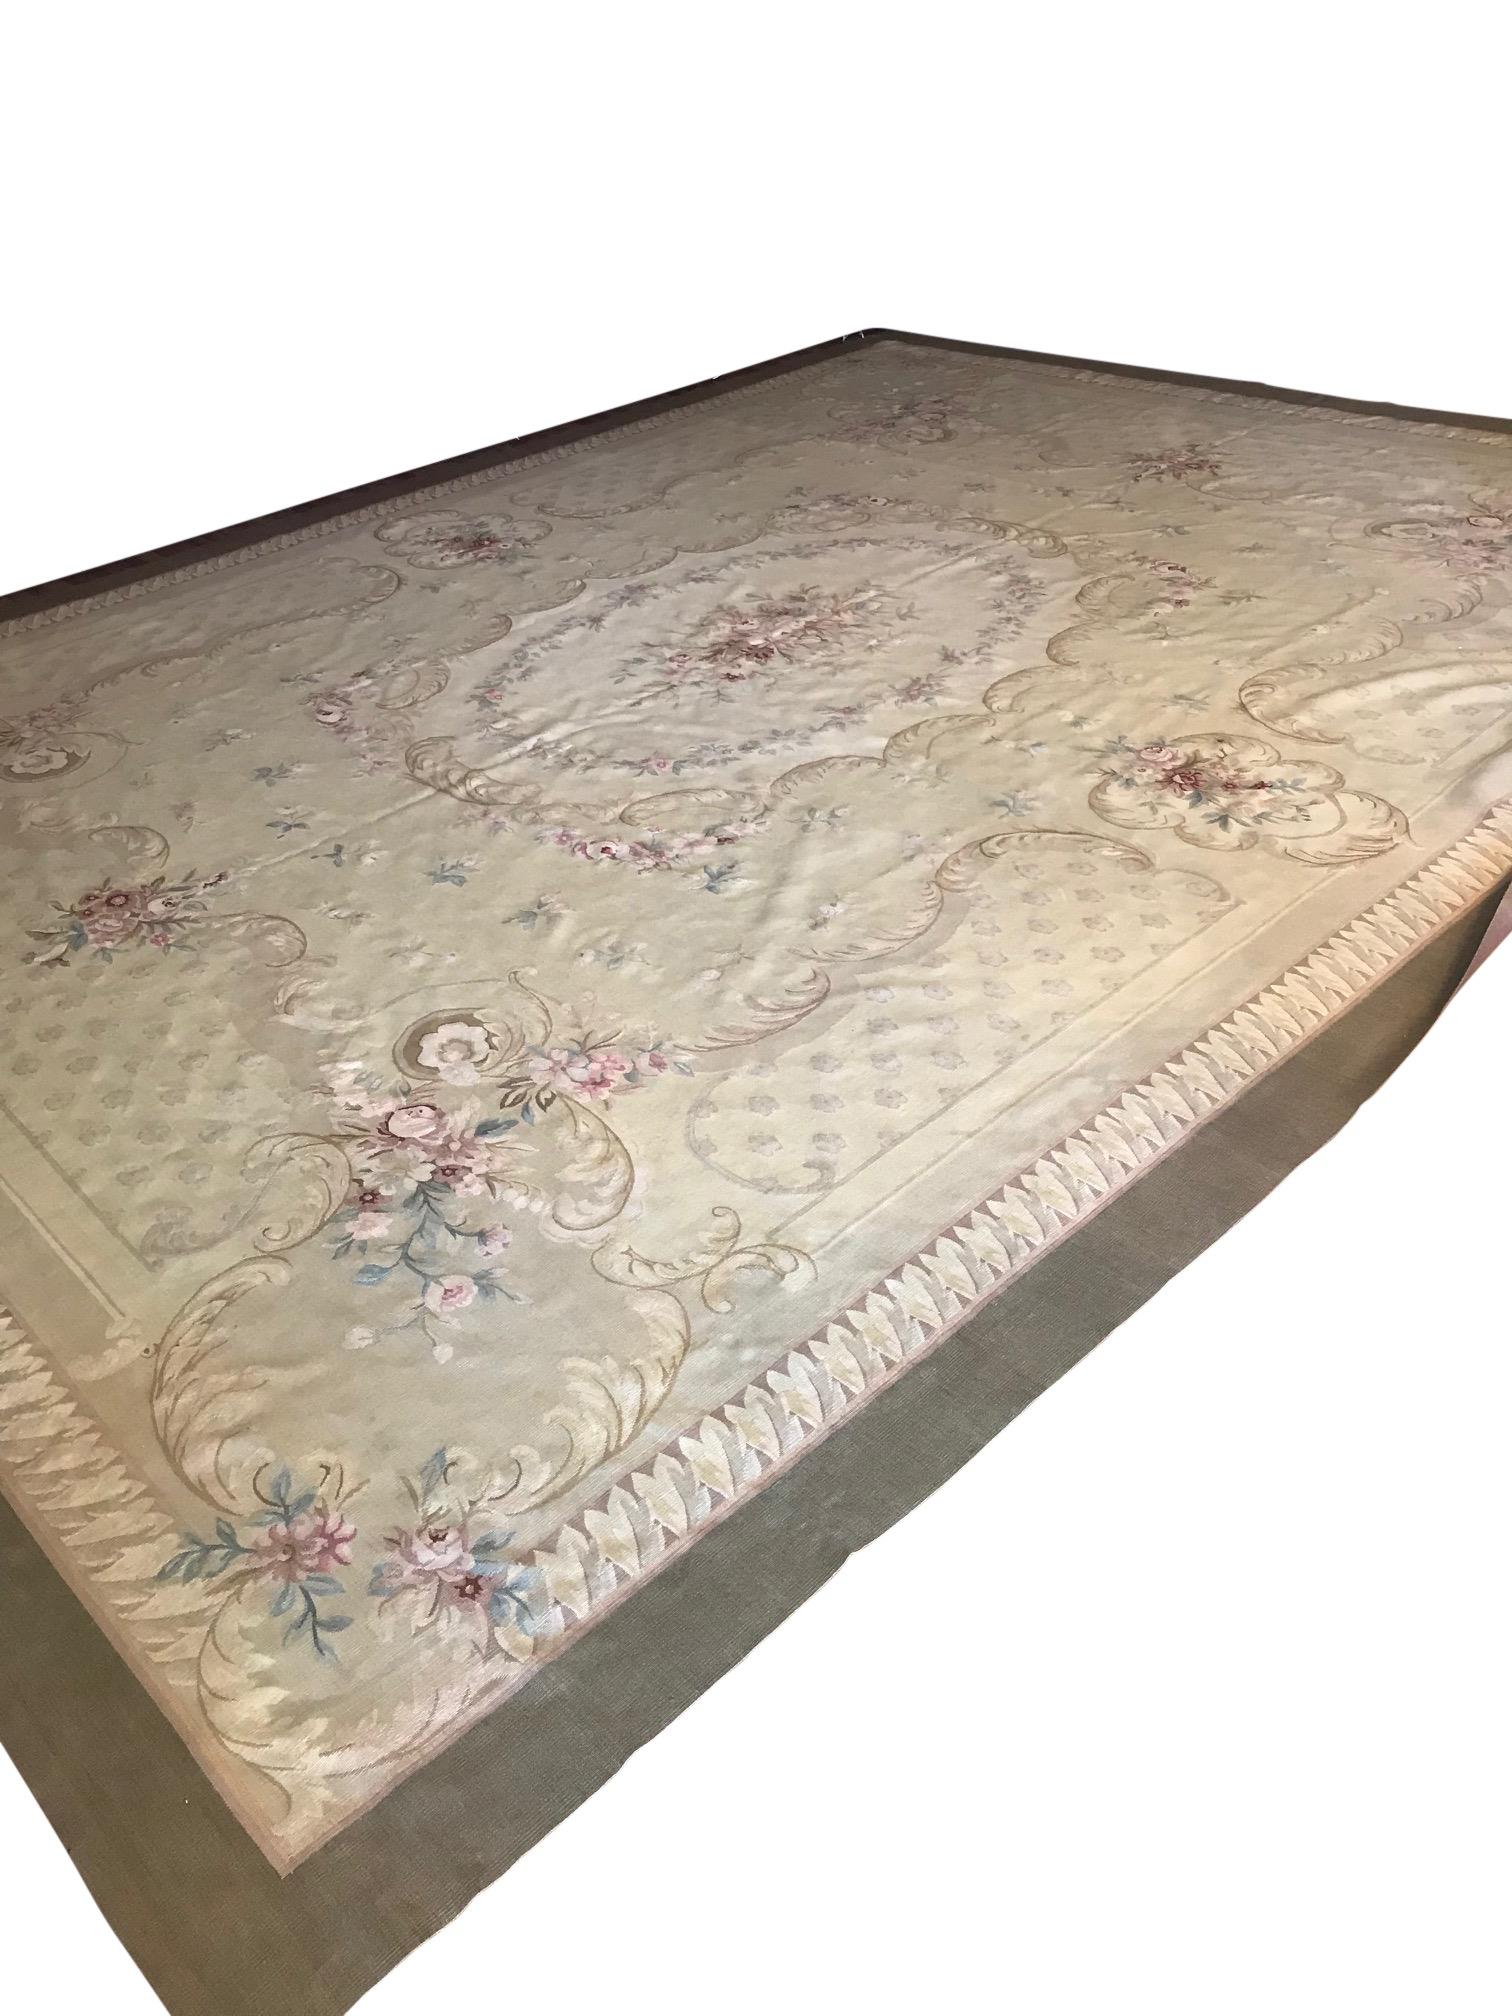 Romantic Antique French Aubusson Carpet